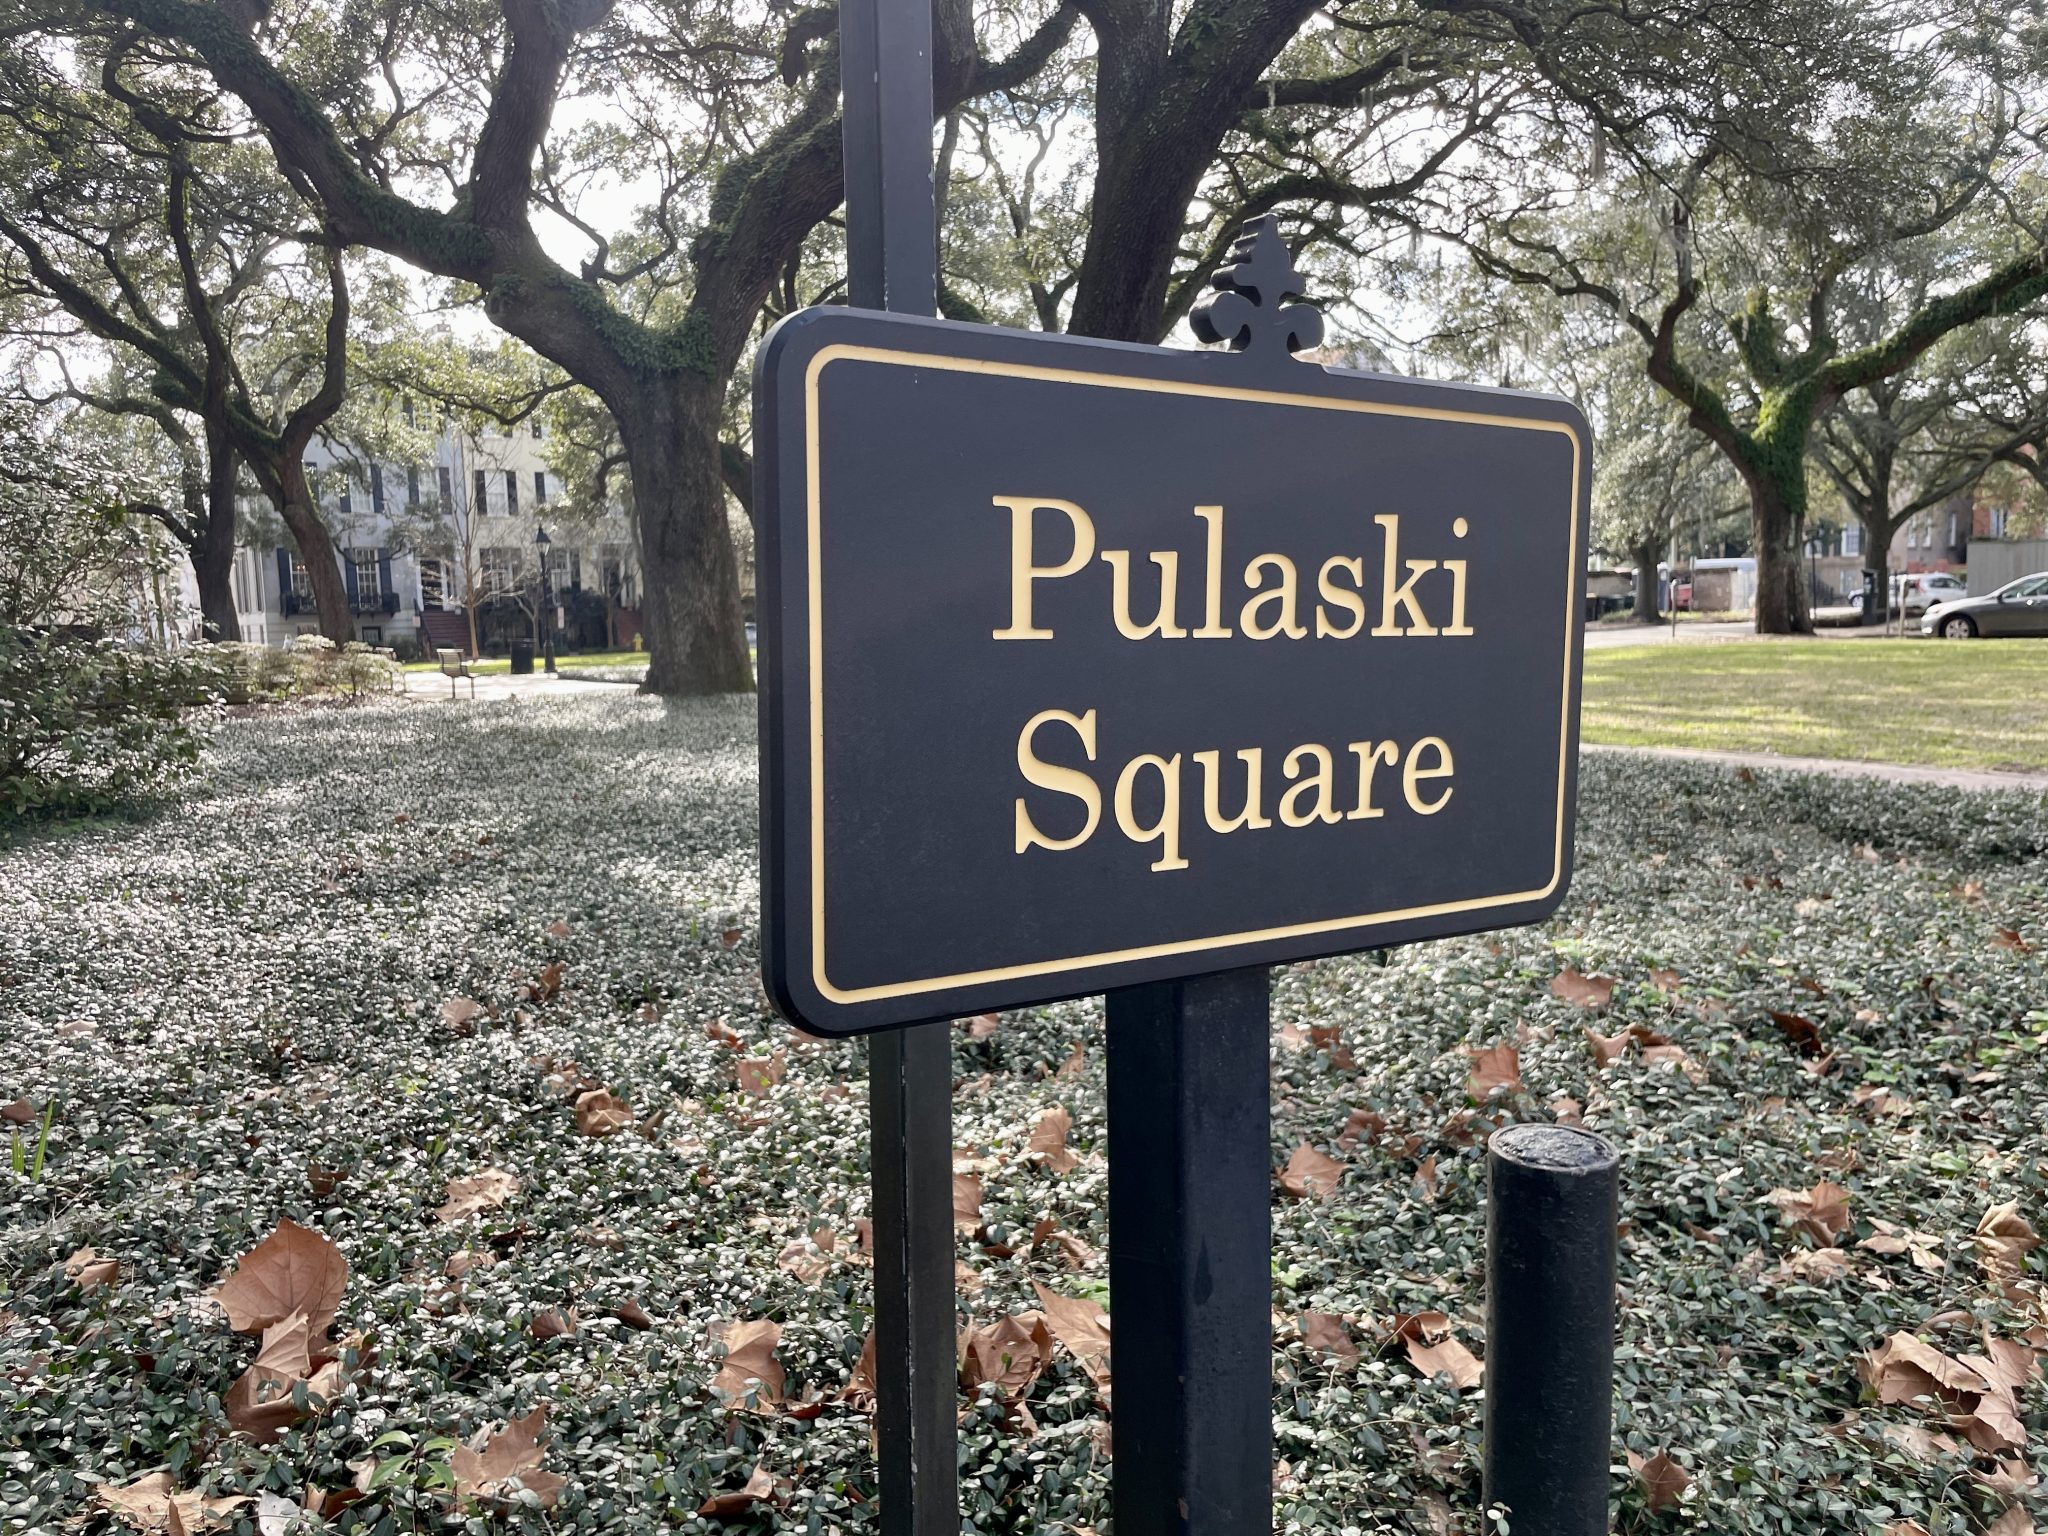 Pulaski Square in Savannah